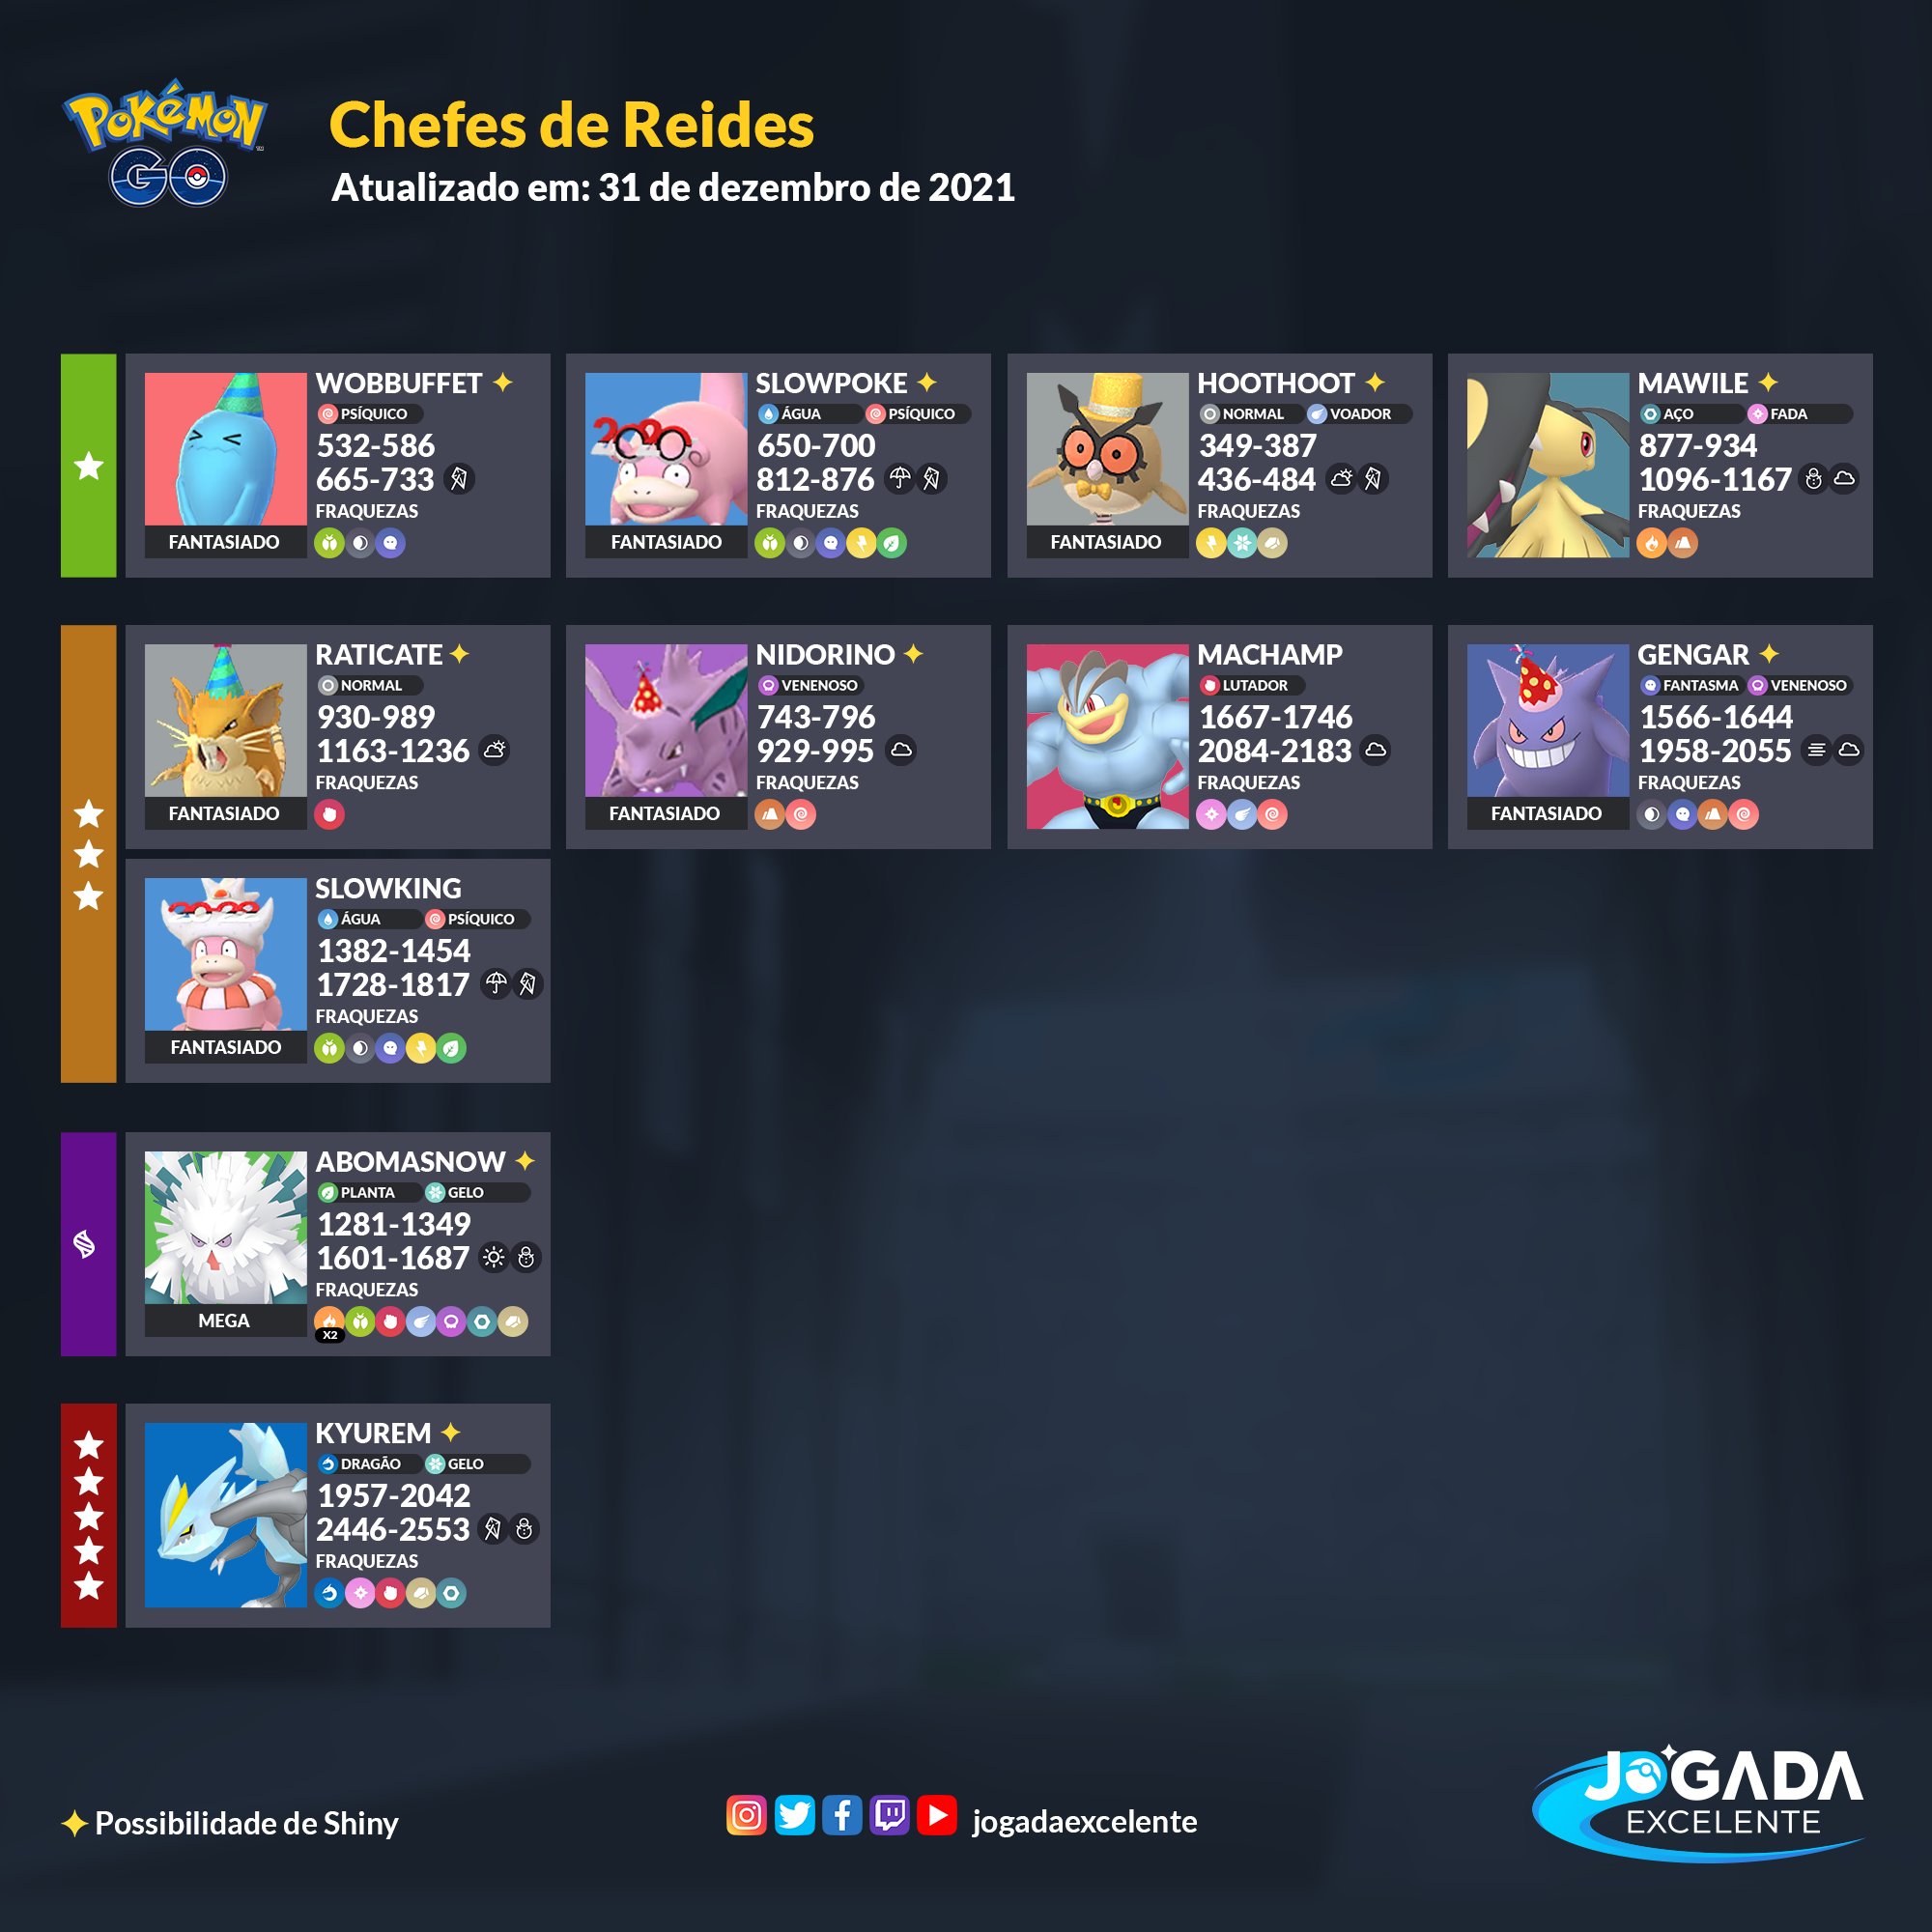 Jogada Excelente on X: Latias e Latios retornam ao Pokémon GO como Chefes  de Reides 5 Estrelas. Se tiver sorte, poderá encontrá-los em suas versões  Brilhantes. Confira quais são os melhores counters